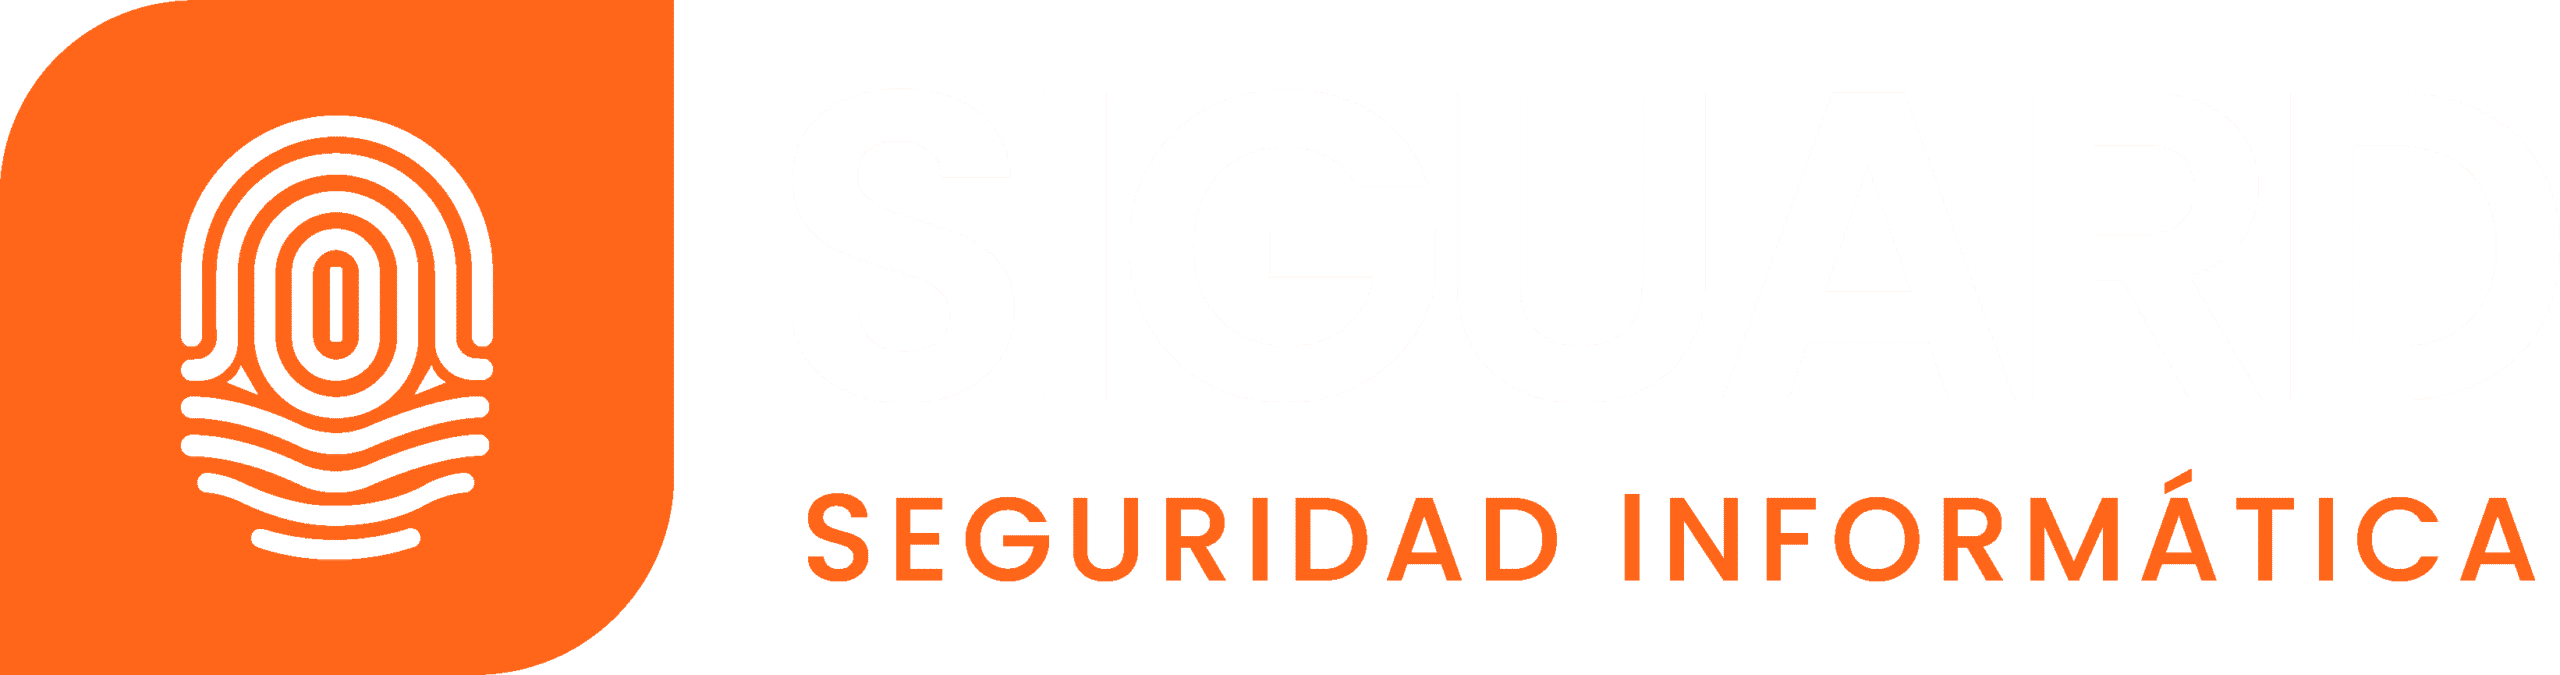 Seguridad Informatica en Colombia SIGUARD